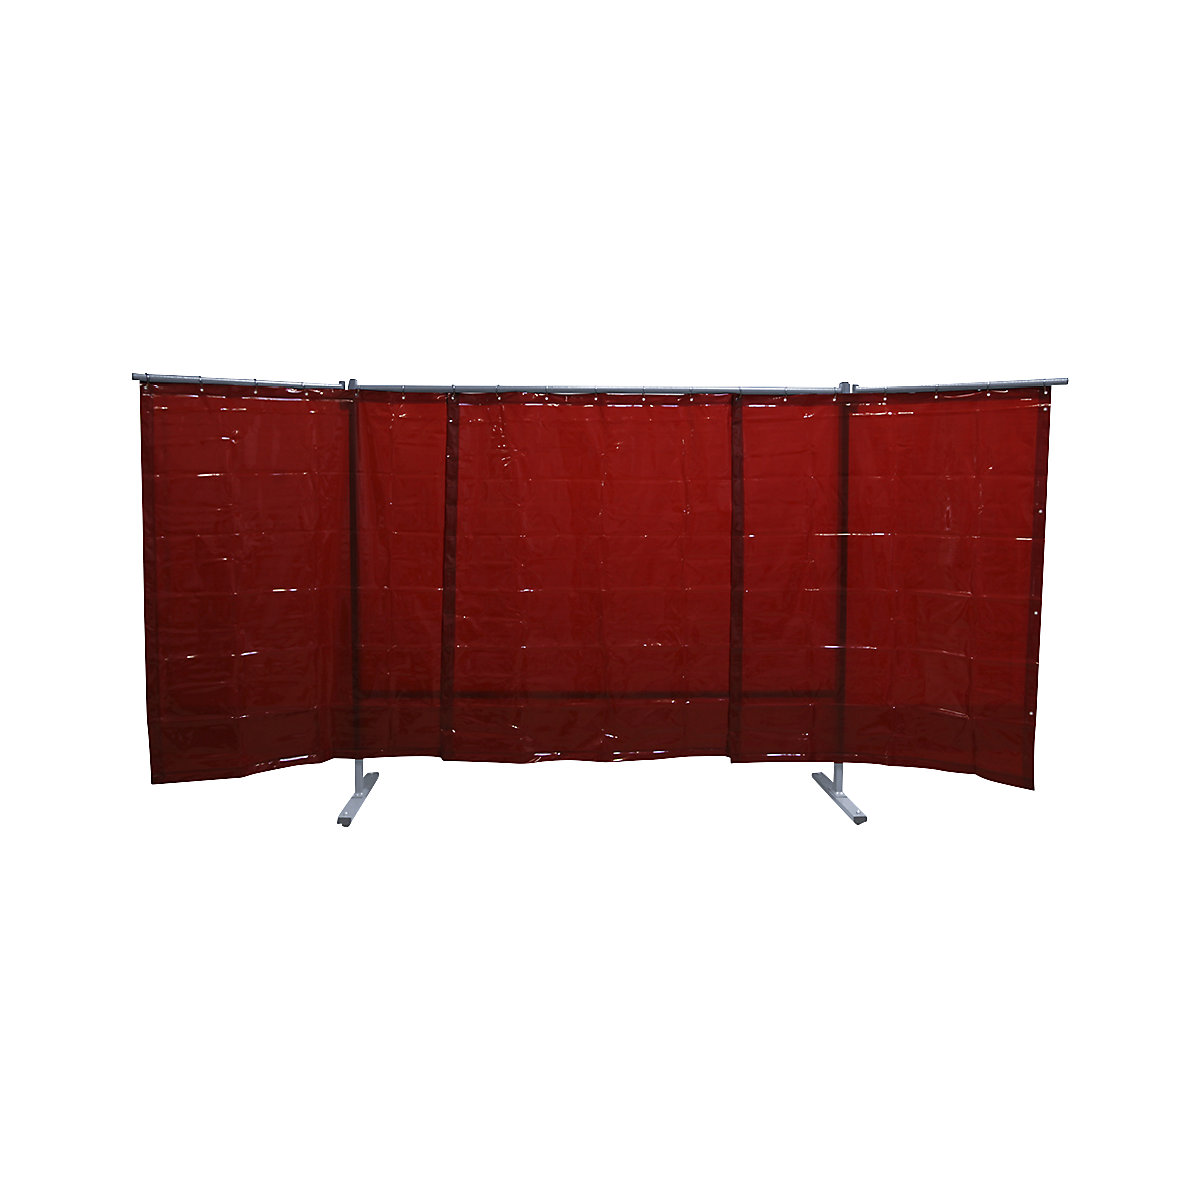 Pojízdná ochranná stěna pro svářeče, 3-dílné provedení, v x š 1930 x 3800 mm, se svářečskou ochrannou fólií, červená